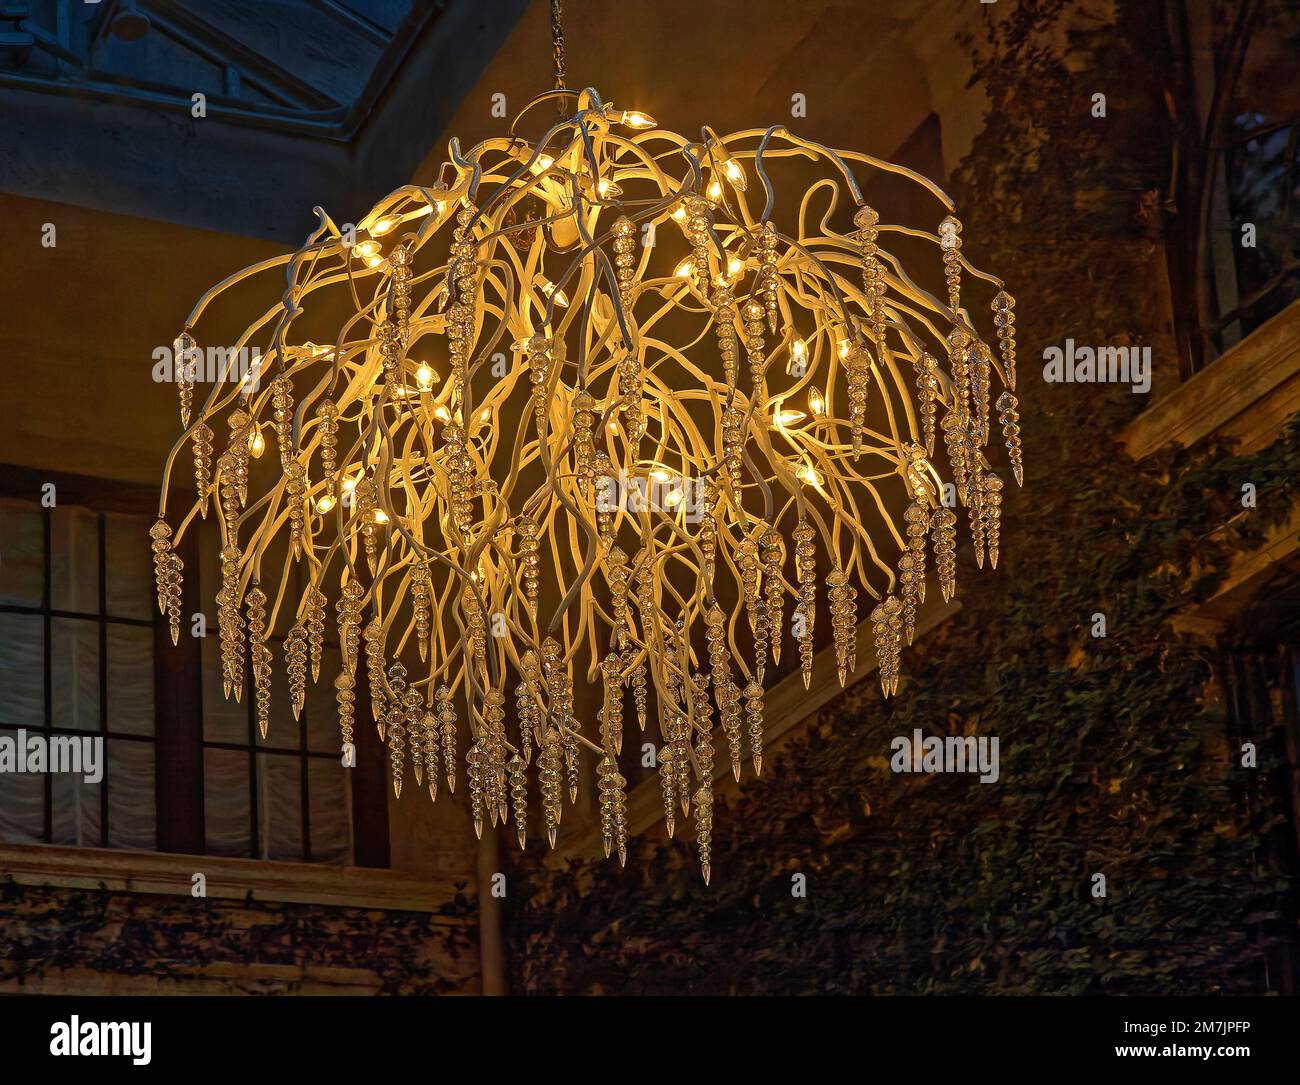 lampadario, decorazioni di ciclicoli, piccoli bulbi bianchi, aggraziato, unico, illuminazione, aspetto delicato Foto Stock